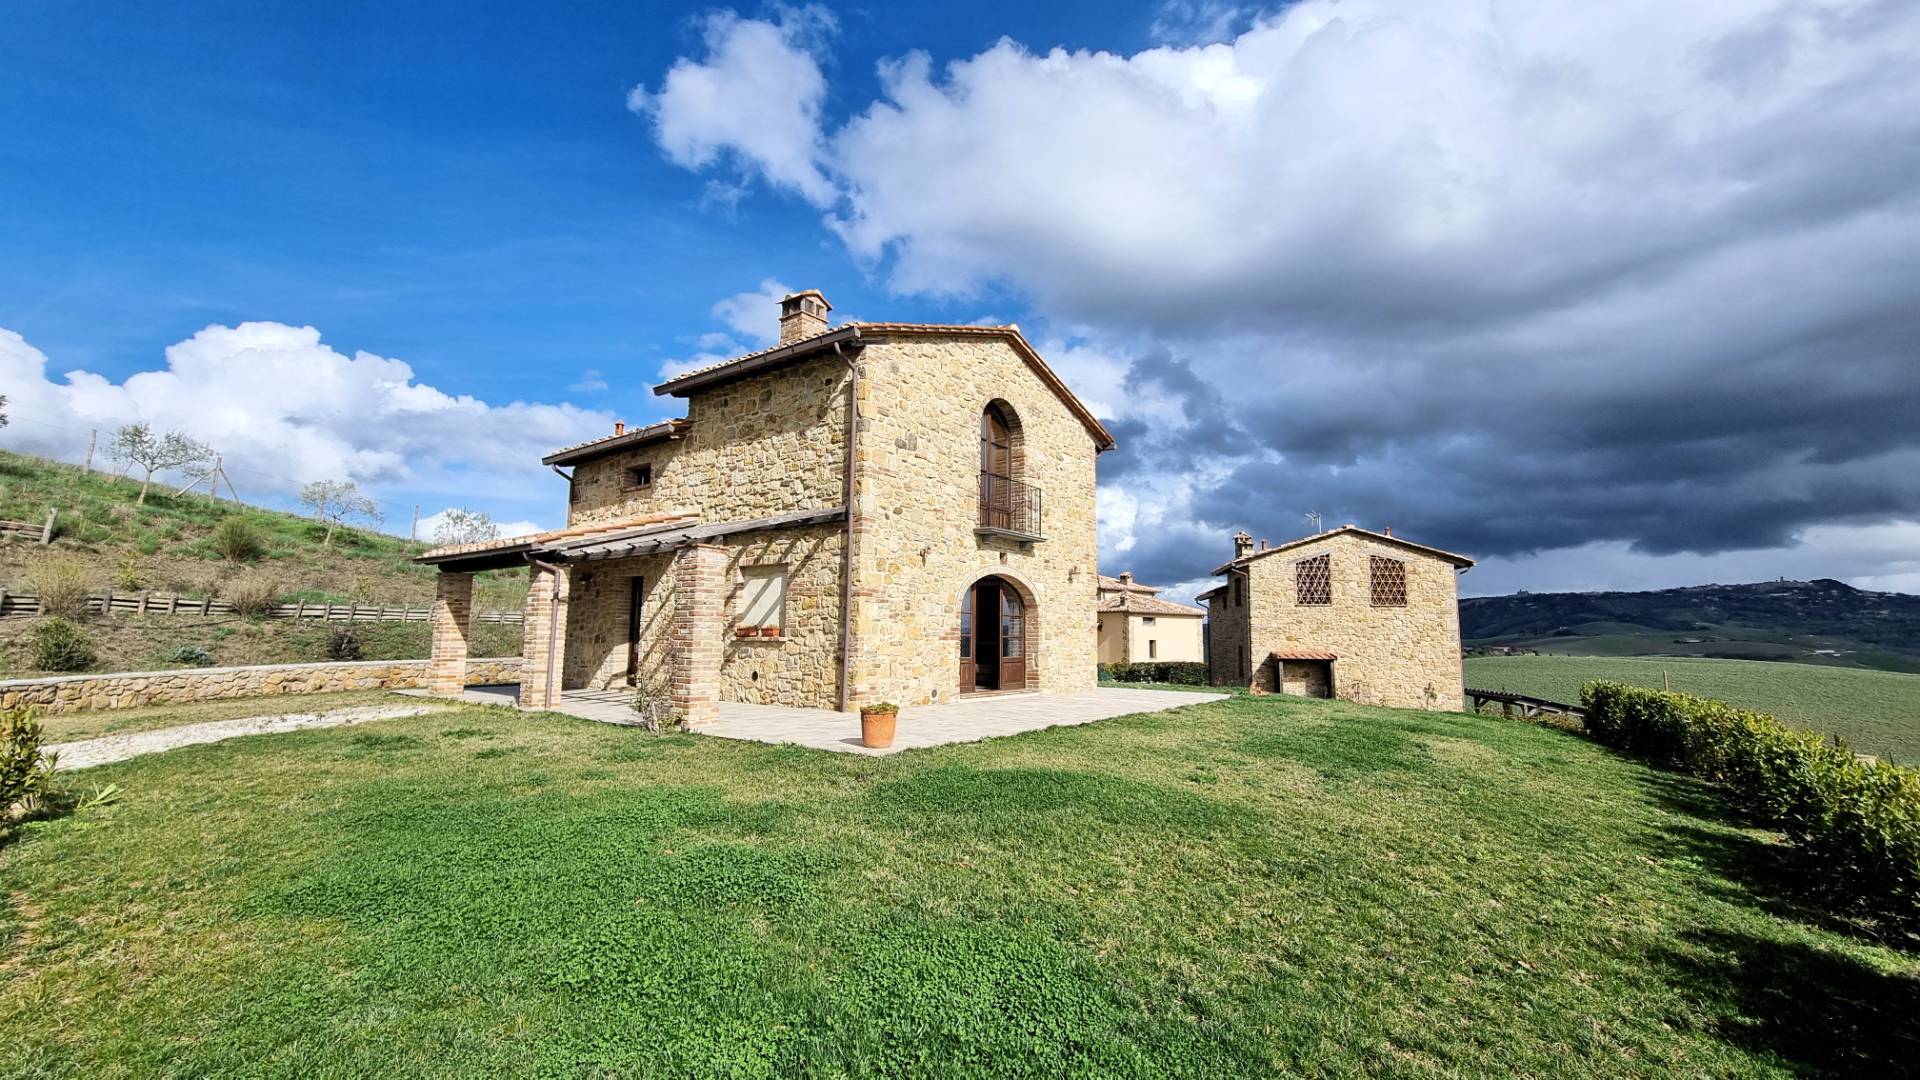 1504-Terratetto in stile rustico Toscano di recente realizzazione in piccolo complesso immobiliare con piscina in comune-Volterra-1 Agenzia Immobiliare ASIP